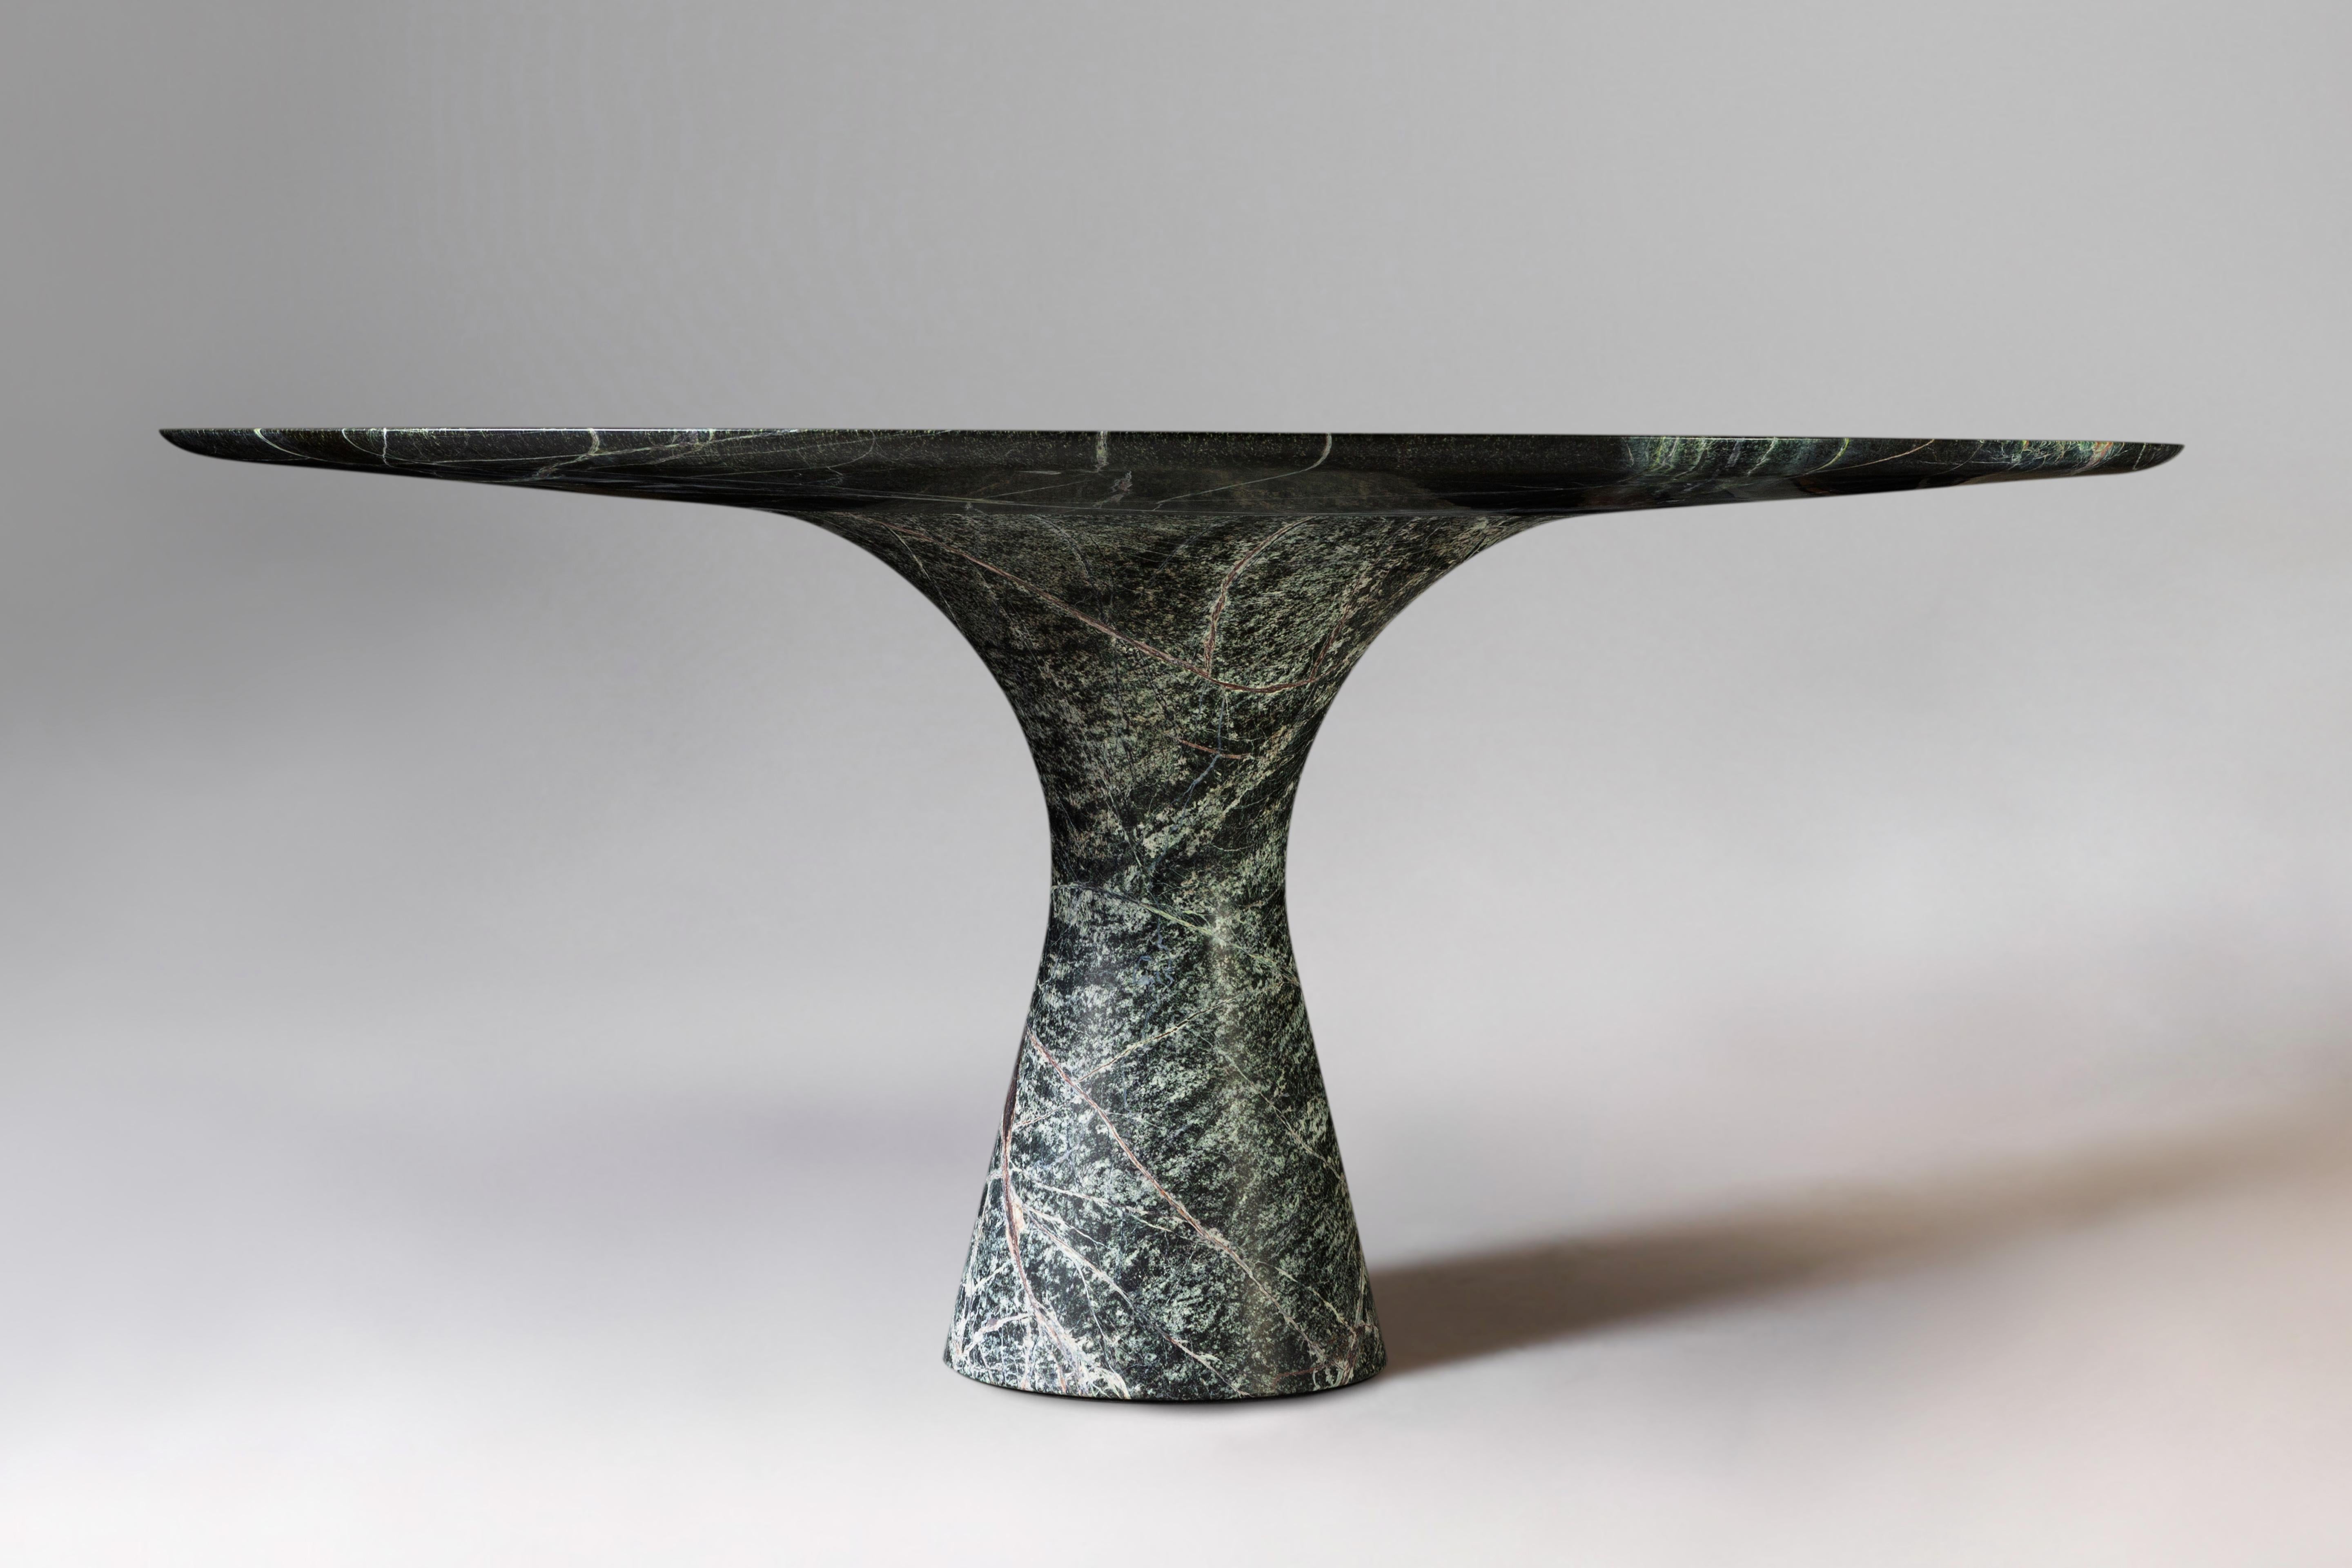 Picasso Grün Verfeinert Zeitgenössischer Marmor Ovaler Tisch 210/75
Abmessungen: 210 x 135 x 75 cm
MATERIALIEN: Grüner Picasso-Marmor.

Angelo ist die Essenz eines runden Tisches aus Naturstein, eine skulpturale Form aus robustem Material mit